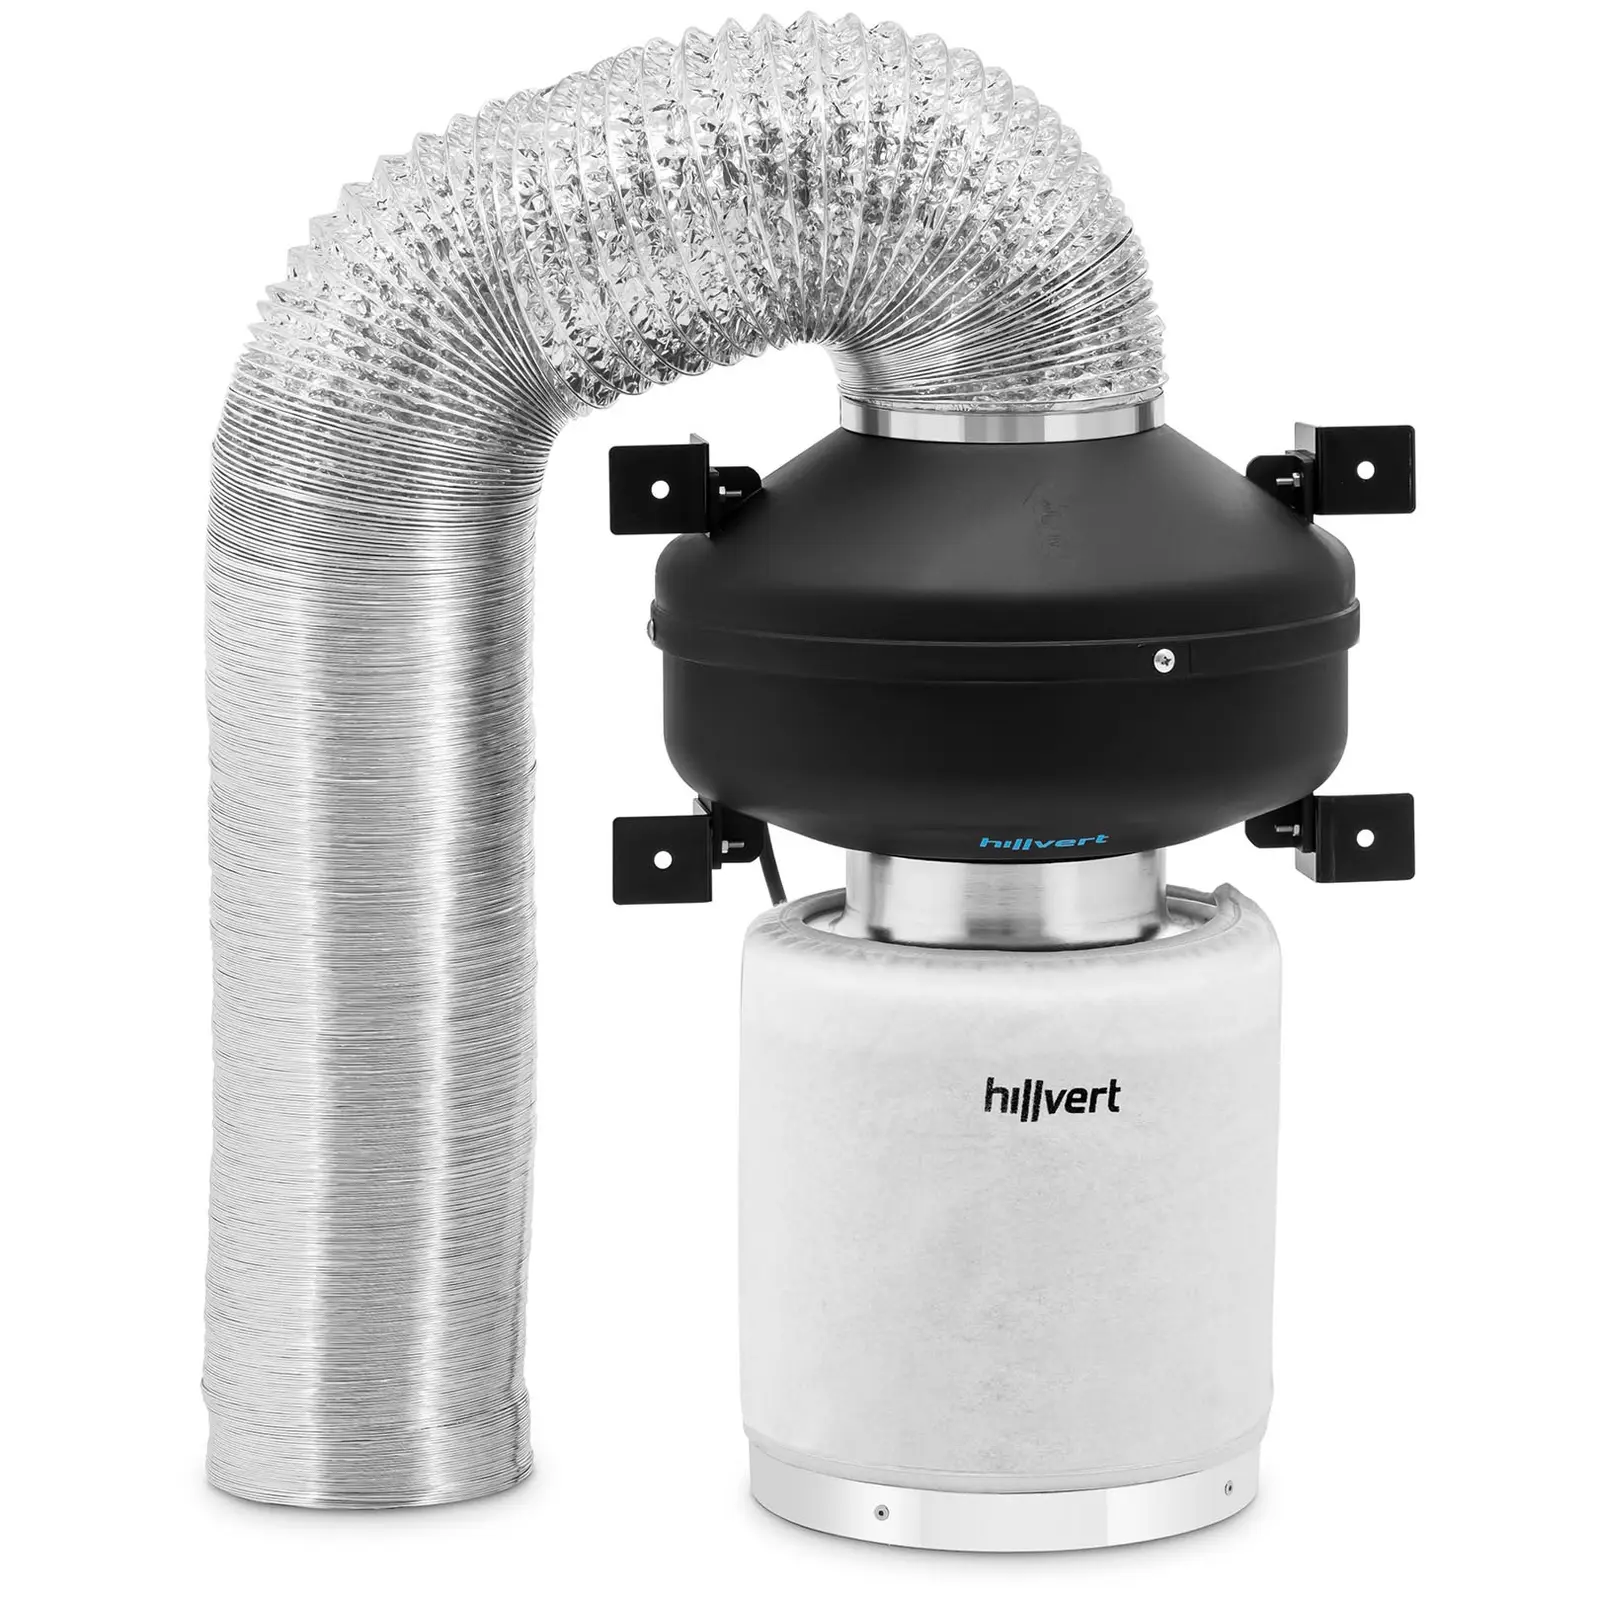 Sada pro odsávání vzduchu - filtr s aktivním uhlím / potrubní ventilátor / hadice pro odsávání vzduchu - 382.2 m³/h - Ø 125 mm výstupní otvor